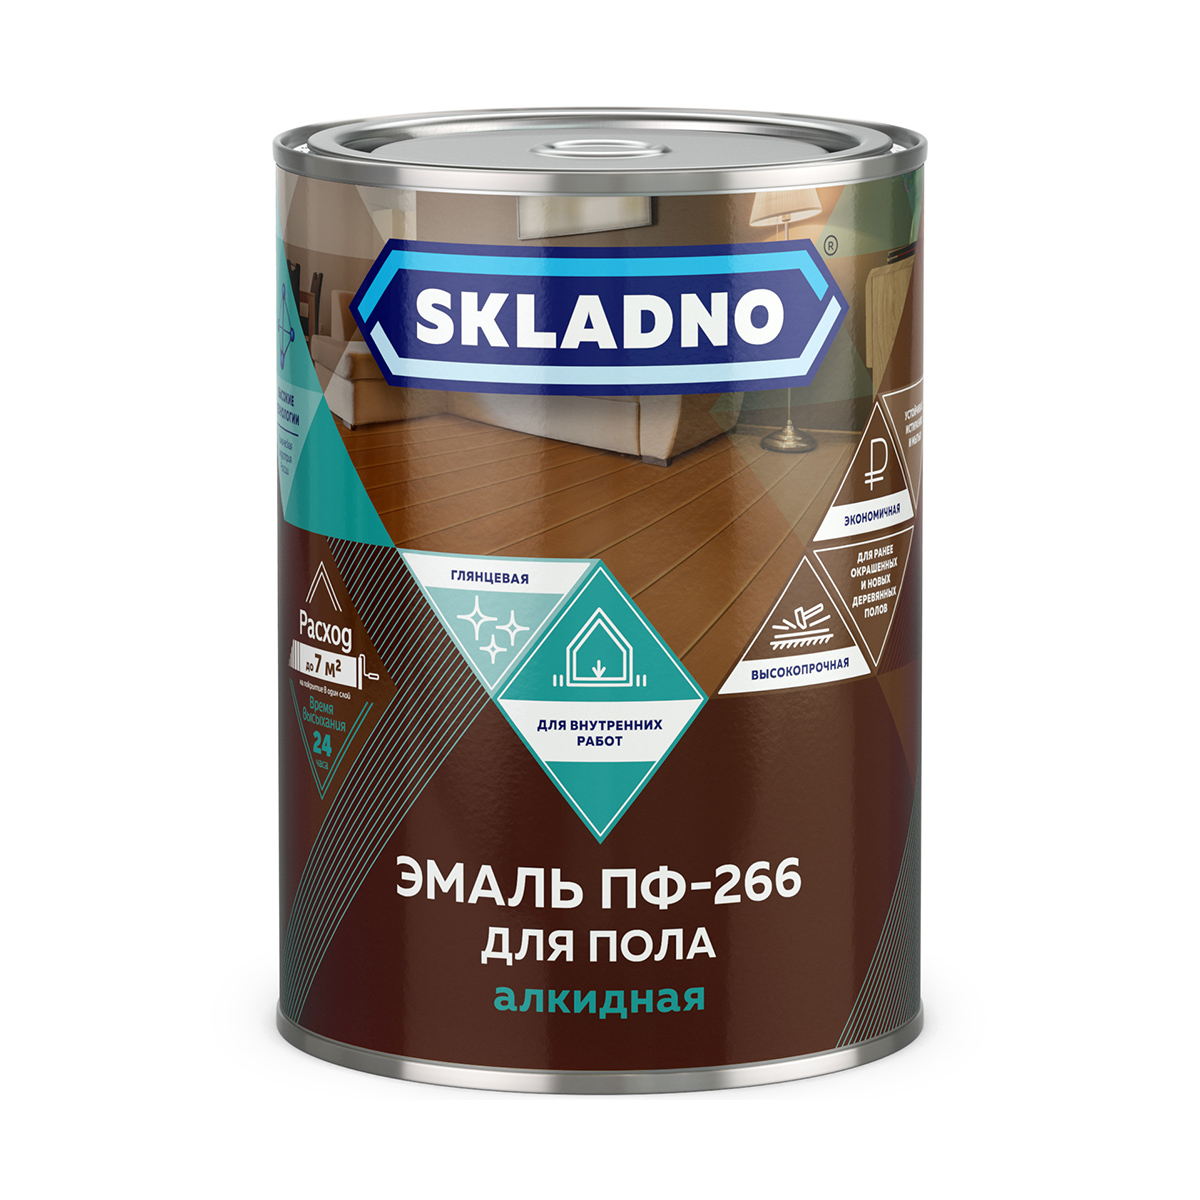 Эмаль ПФ-266 для пола Skladno, алкидная, глянцевая, 2,6 кг, золотисто-коричневая ferplast charles 60 софа с двухсторонней подушкой коричневая